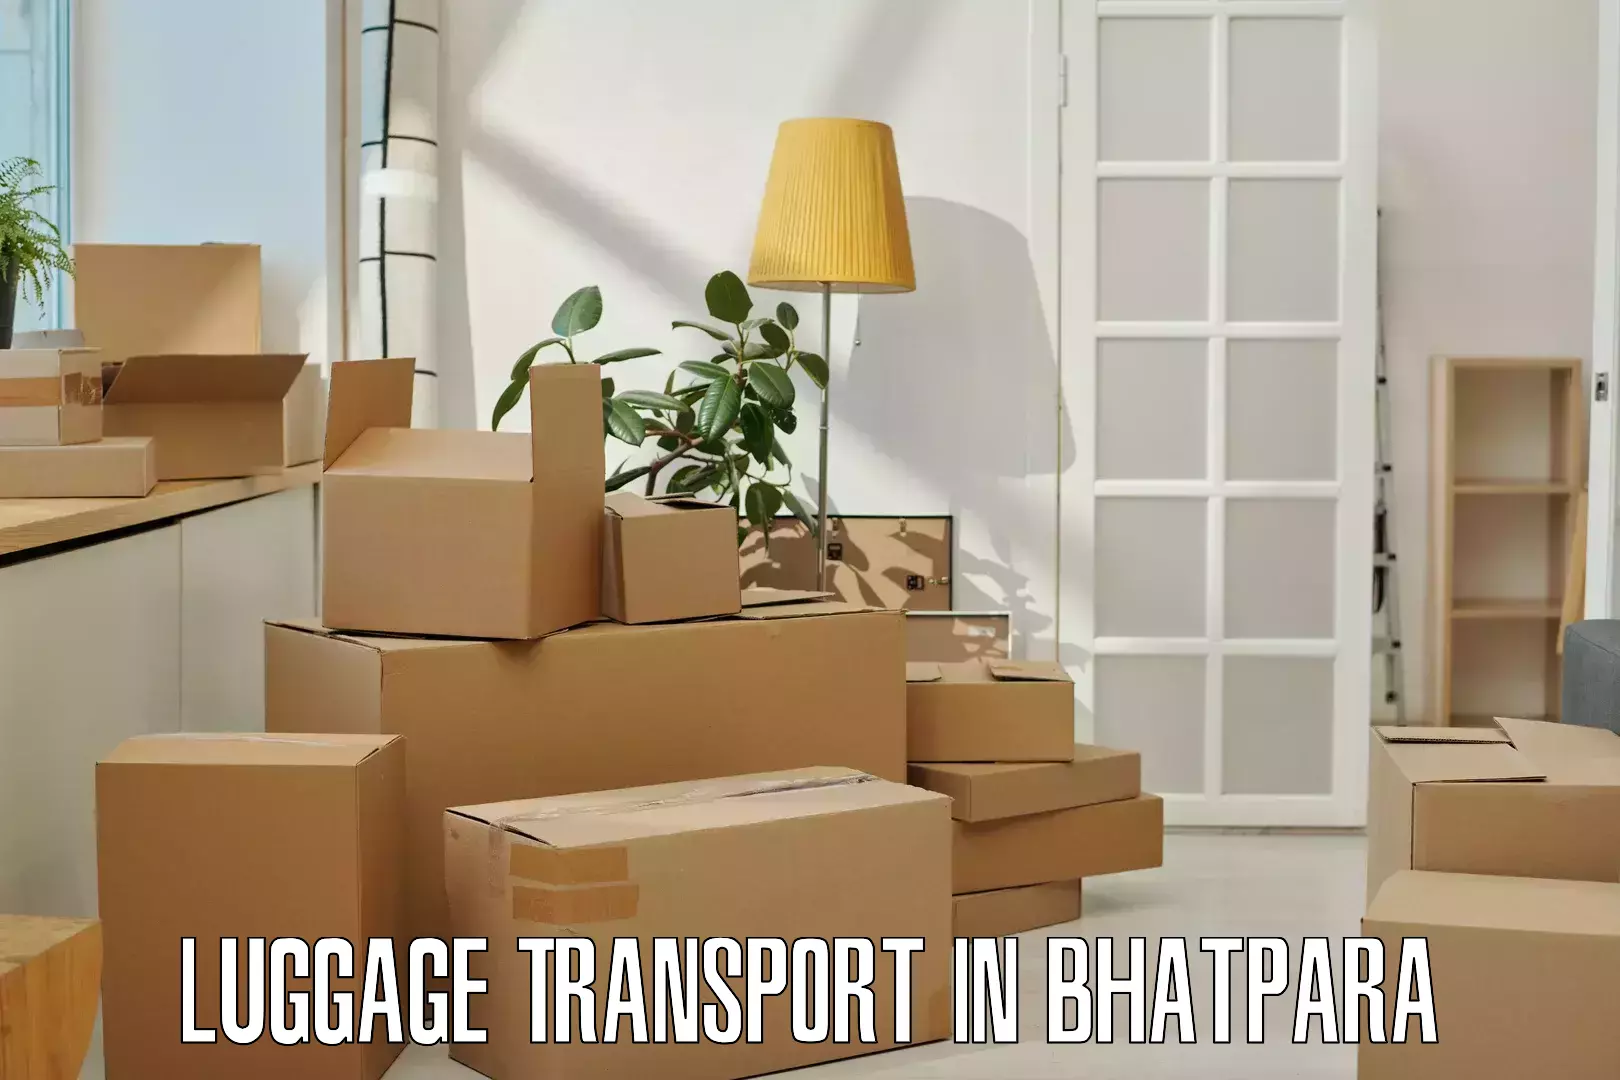 Luggage transport schedule in Bhatpara